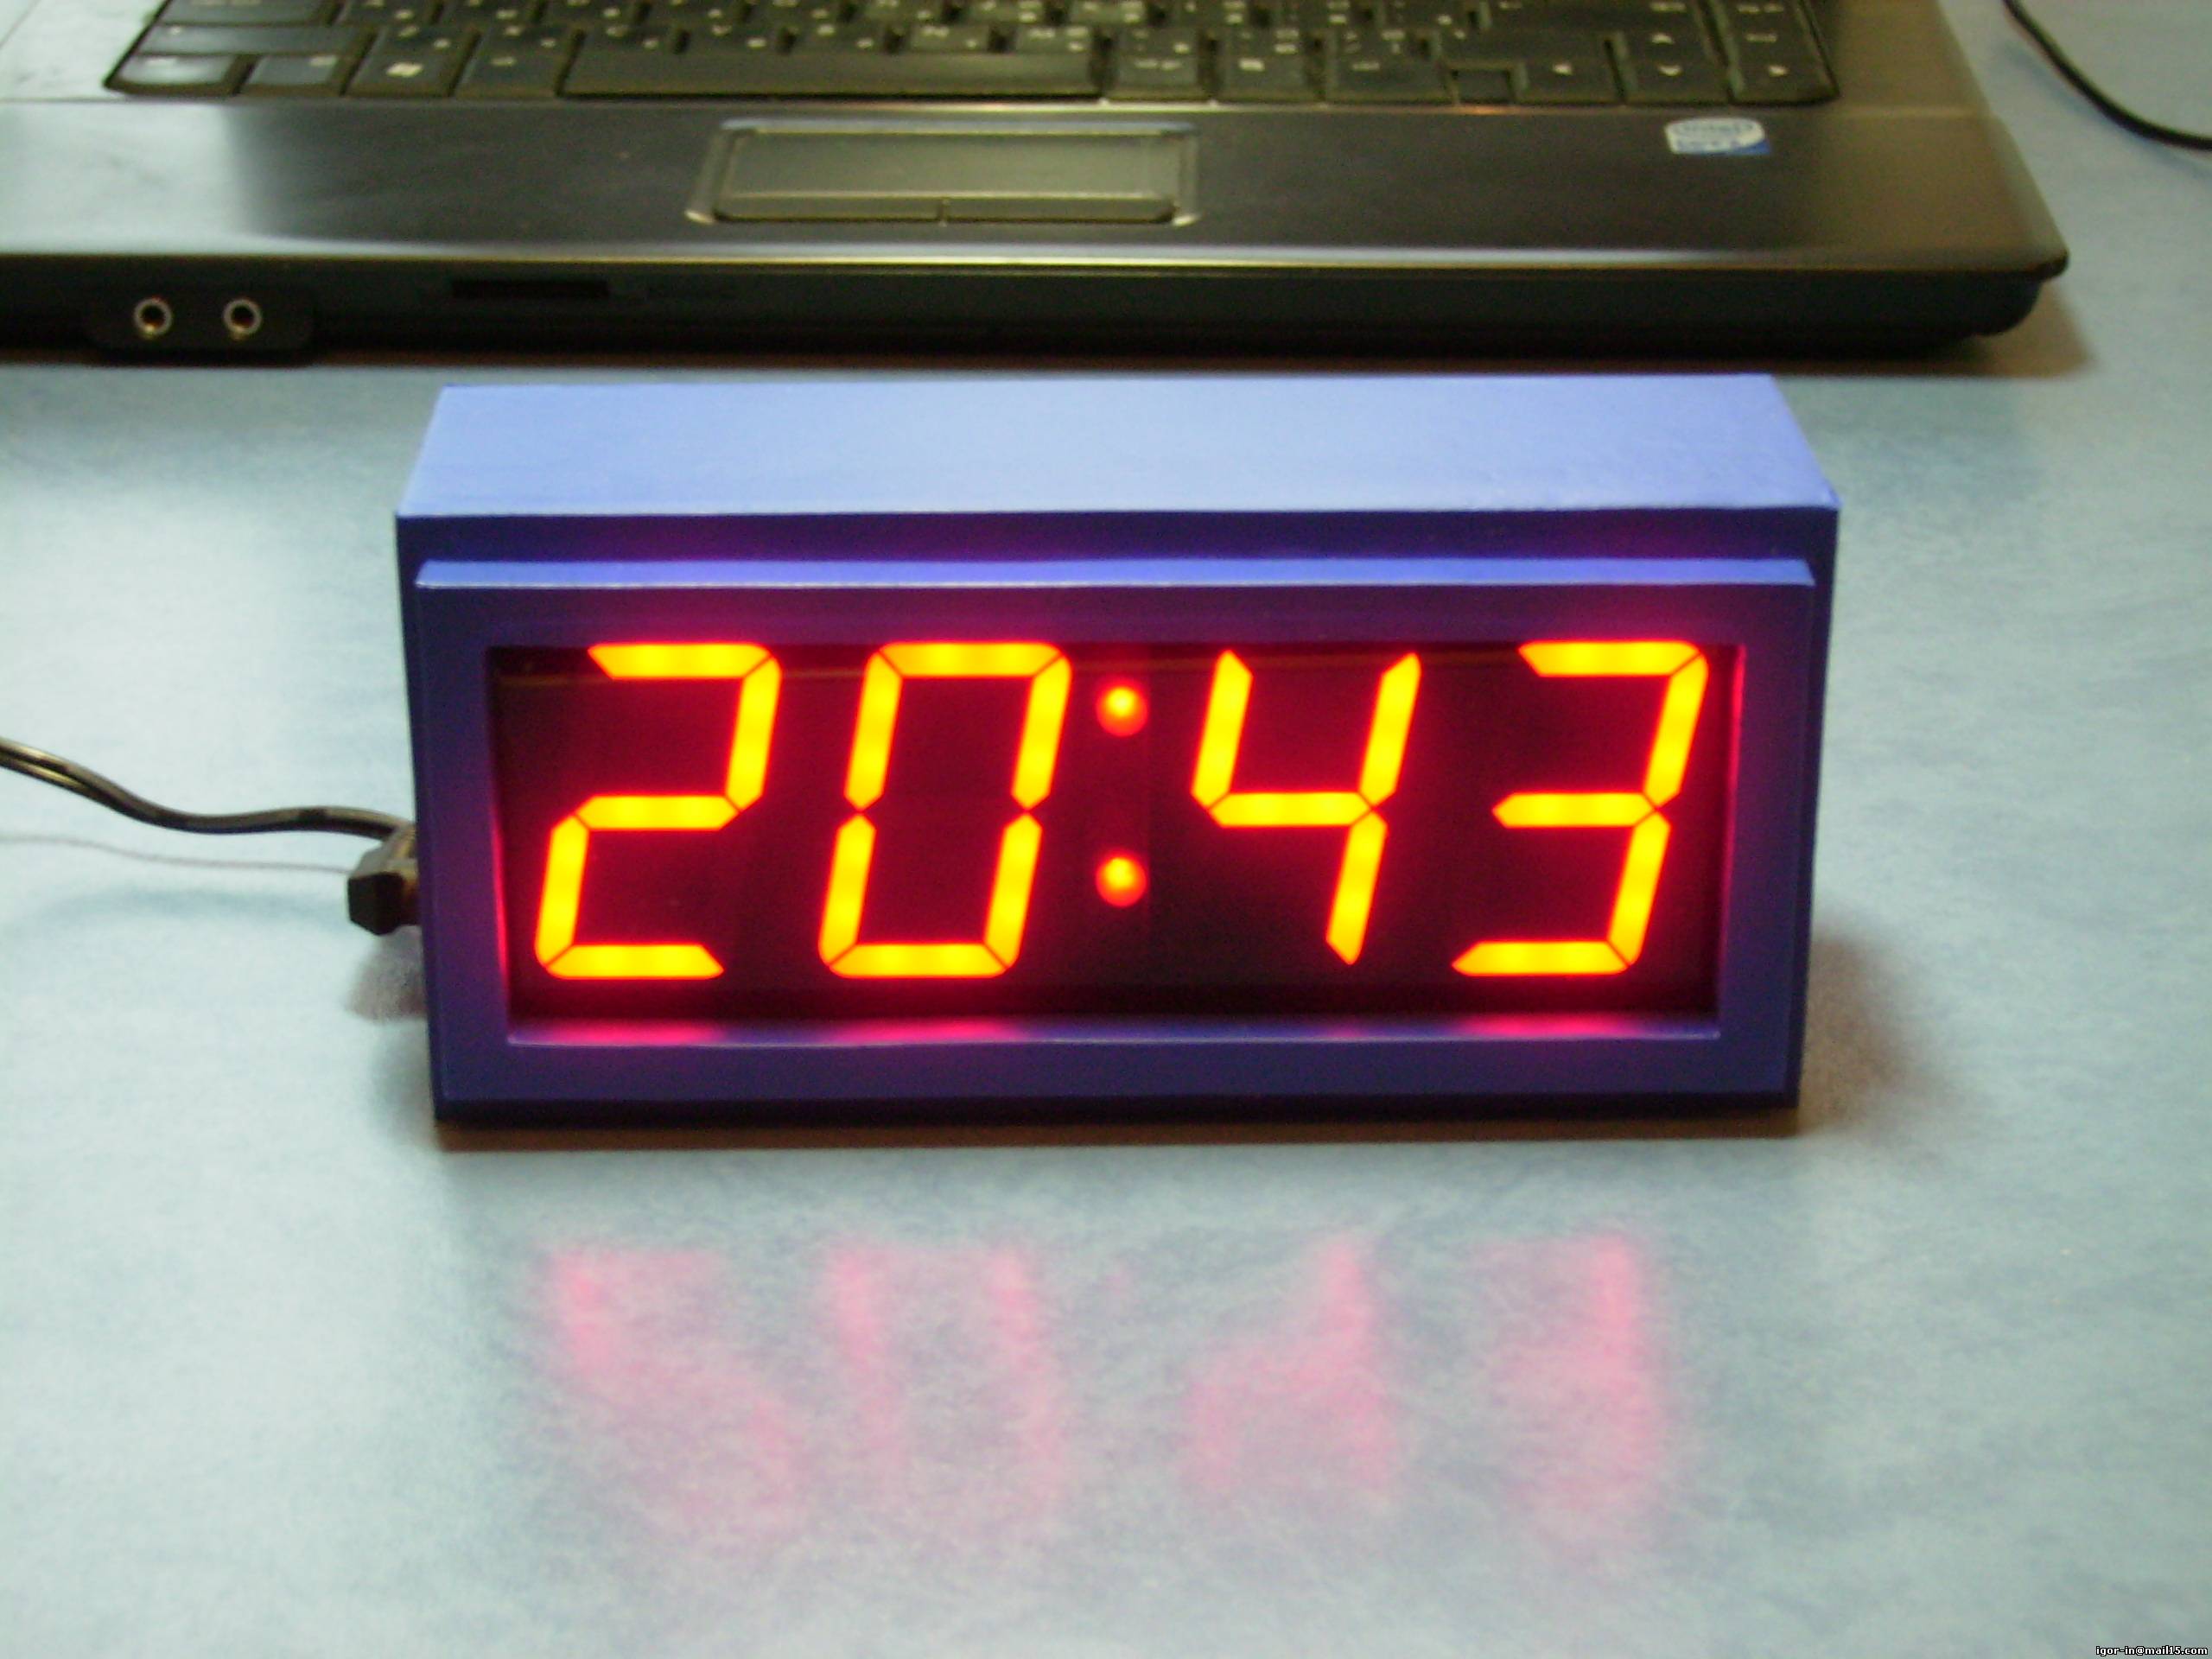 Делаем своими руками электронные часы с будильником на базе KIT набора с AliExpress.